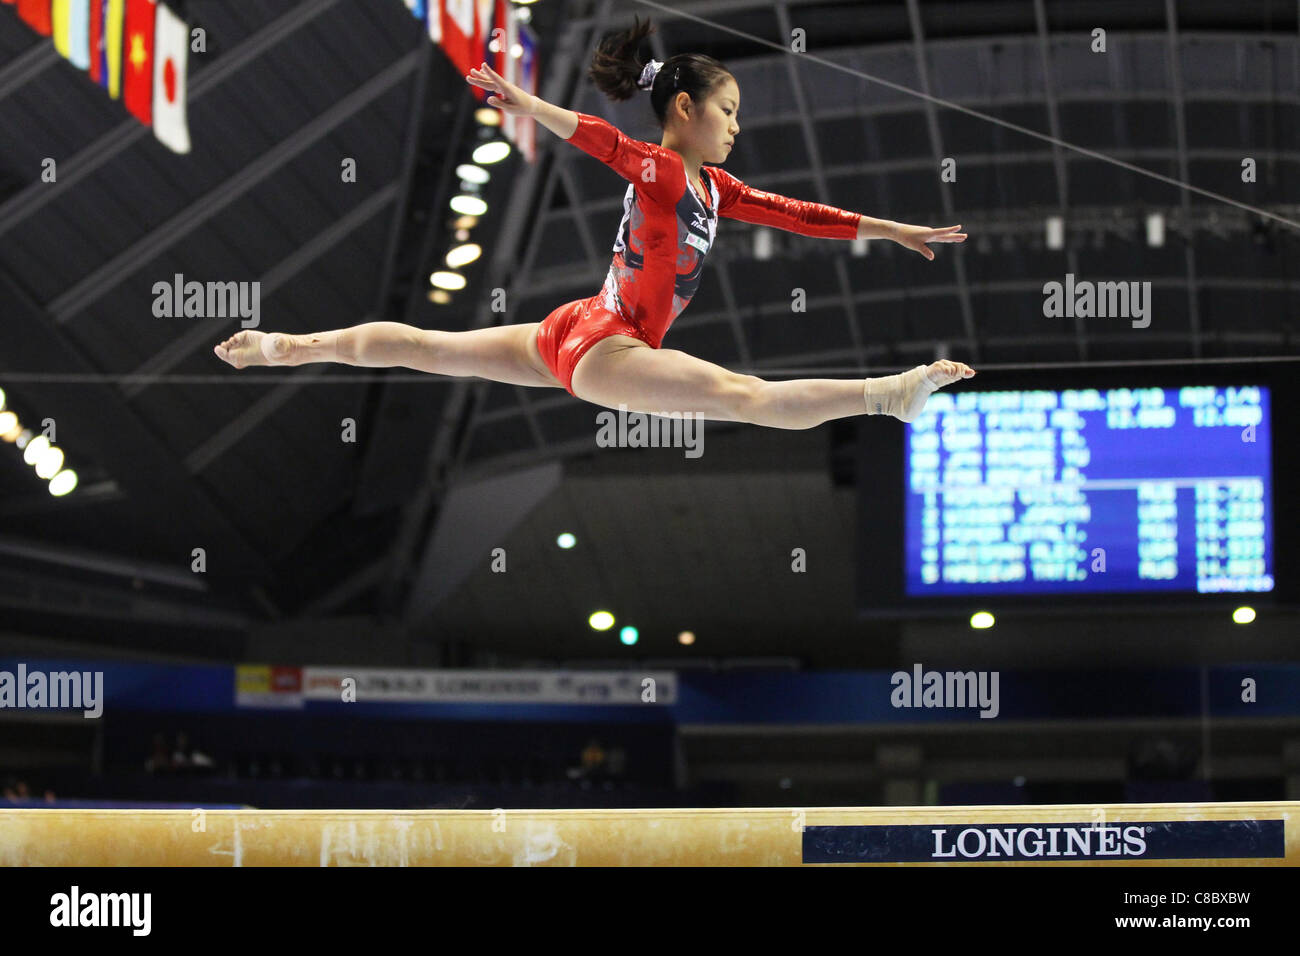 Yu Minobe (JPN) führt während der FIG World künstlerische Gymnastik Meisterschaften Tokio 2011. Stockfoto